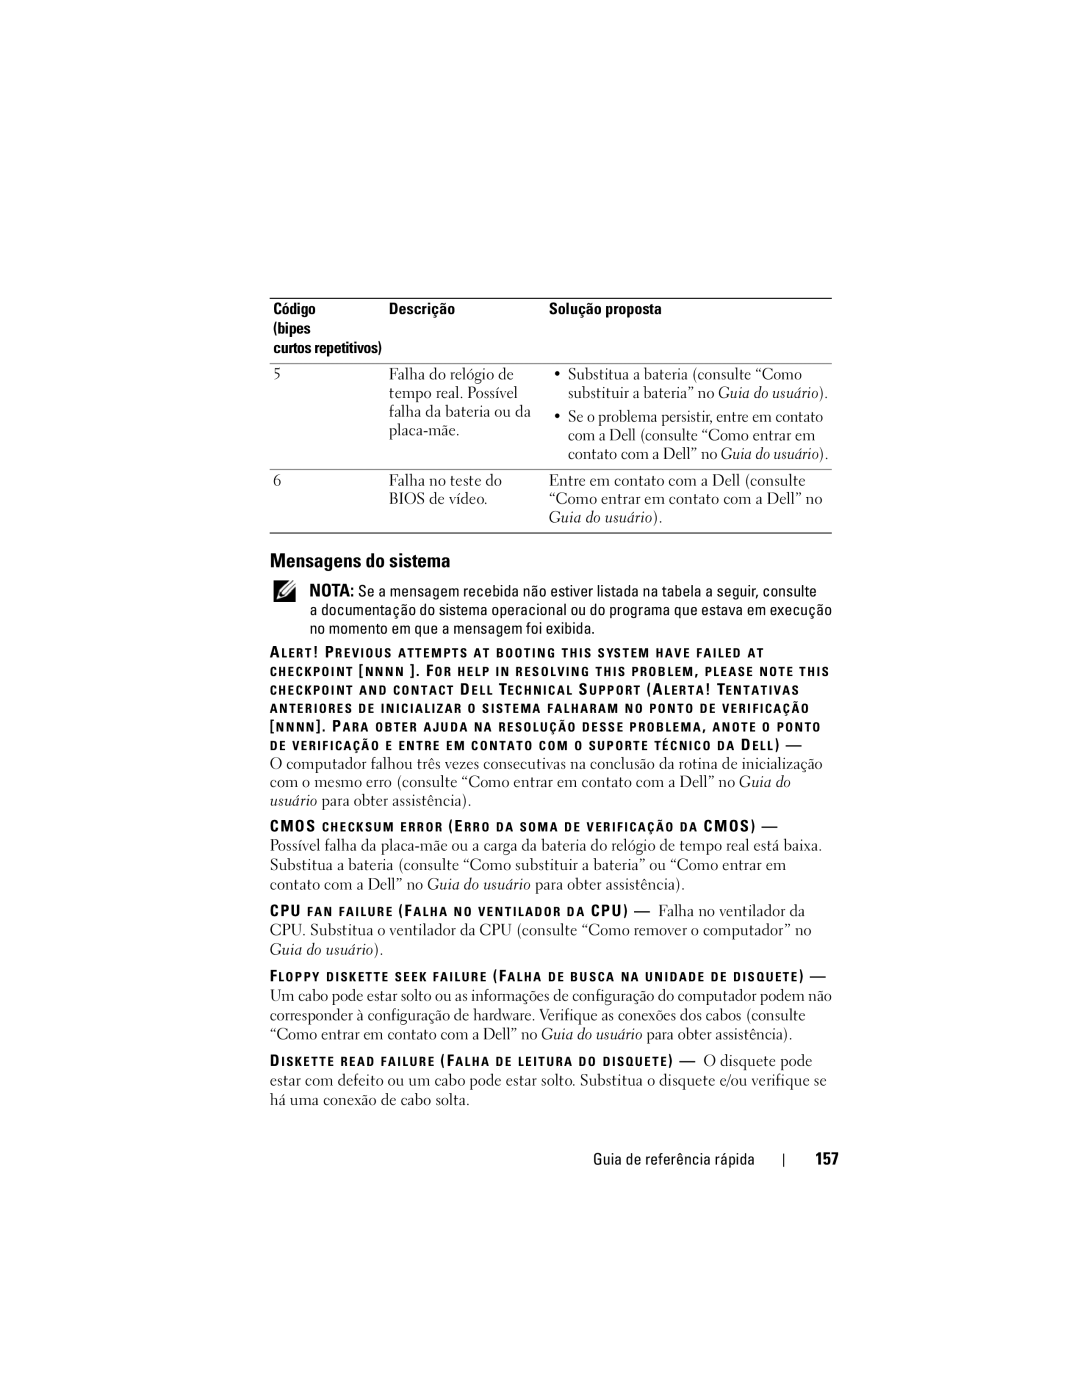 Dell DCDO manual Mensagens do sistema, 157, Código Descrição, Bipes Curtos repetitivos 